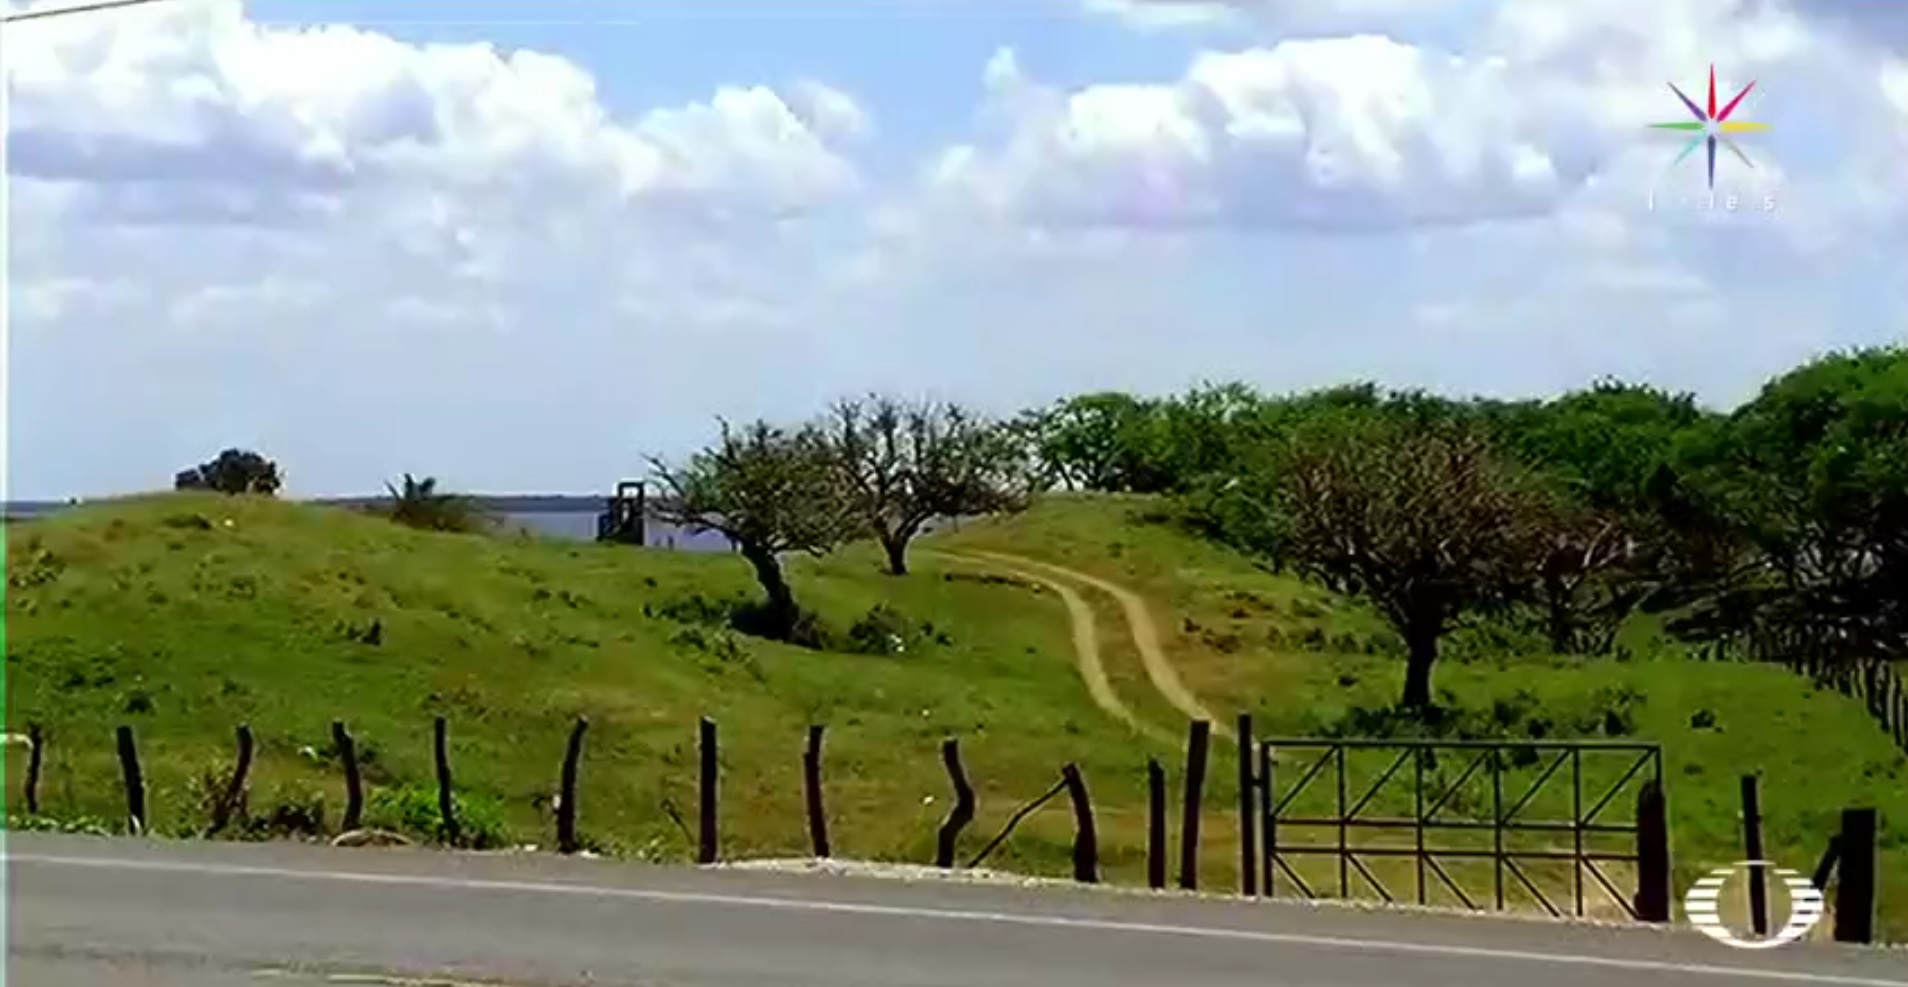 La nueva fosa se ubica en la comunidad El Arbolillo, en Alvarado, Veracruz. (Noticieros Televisa)